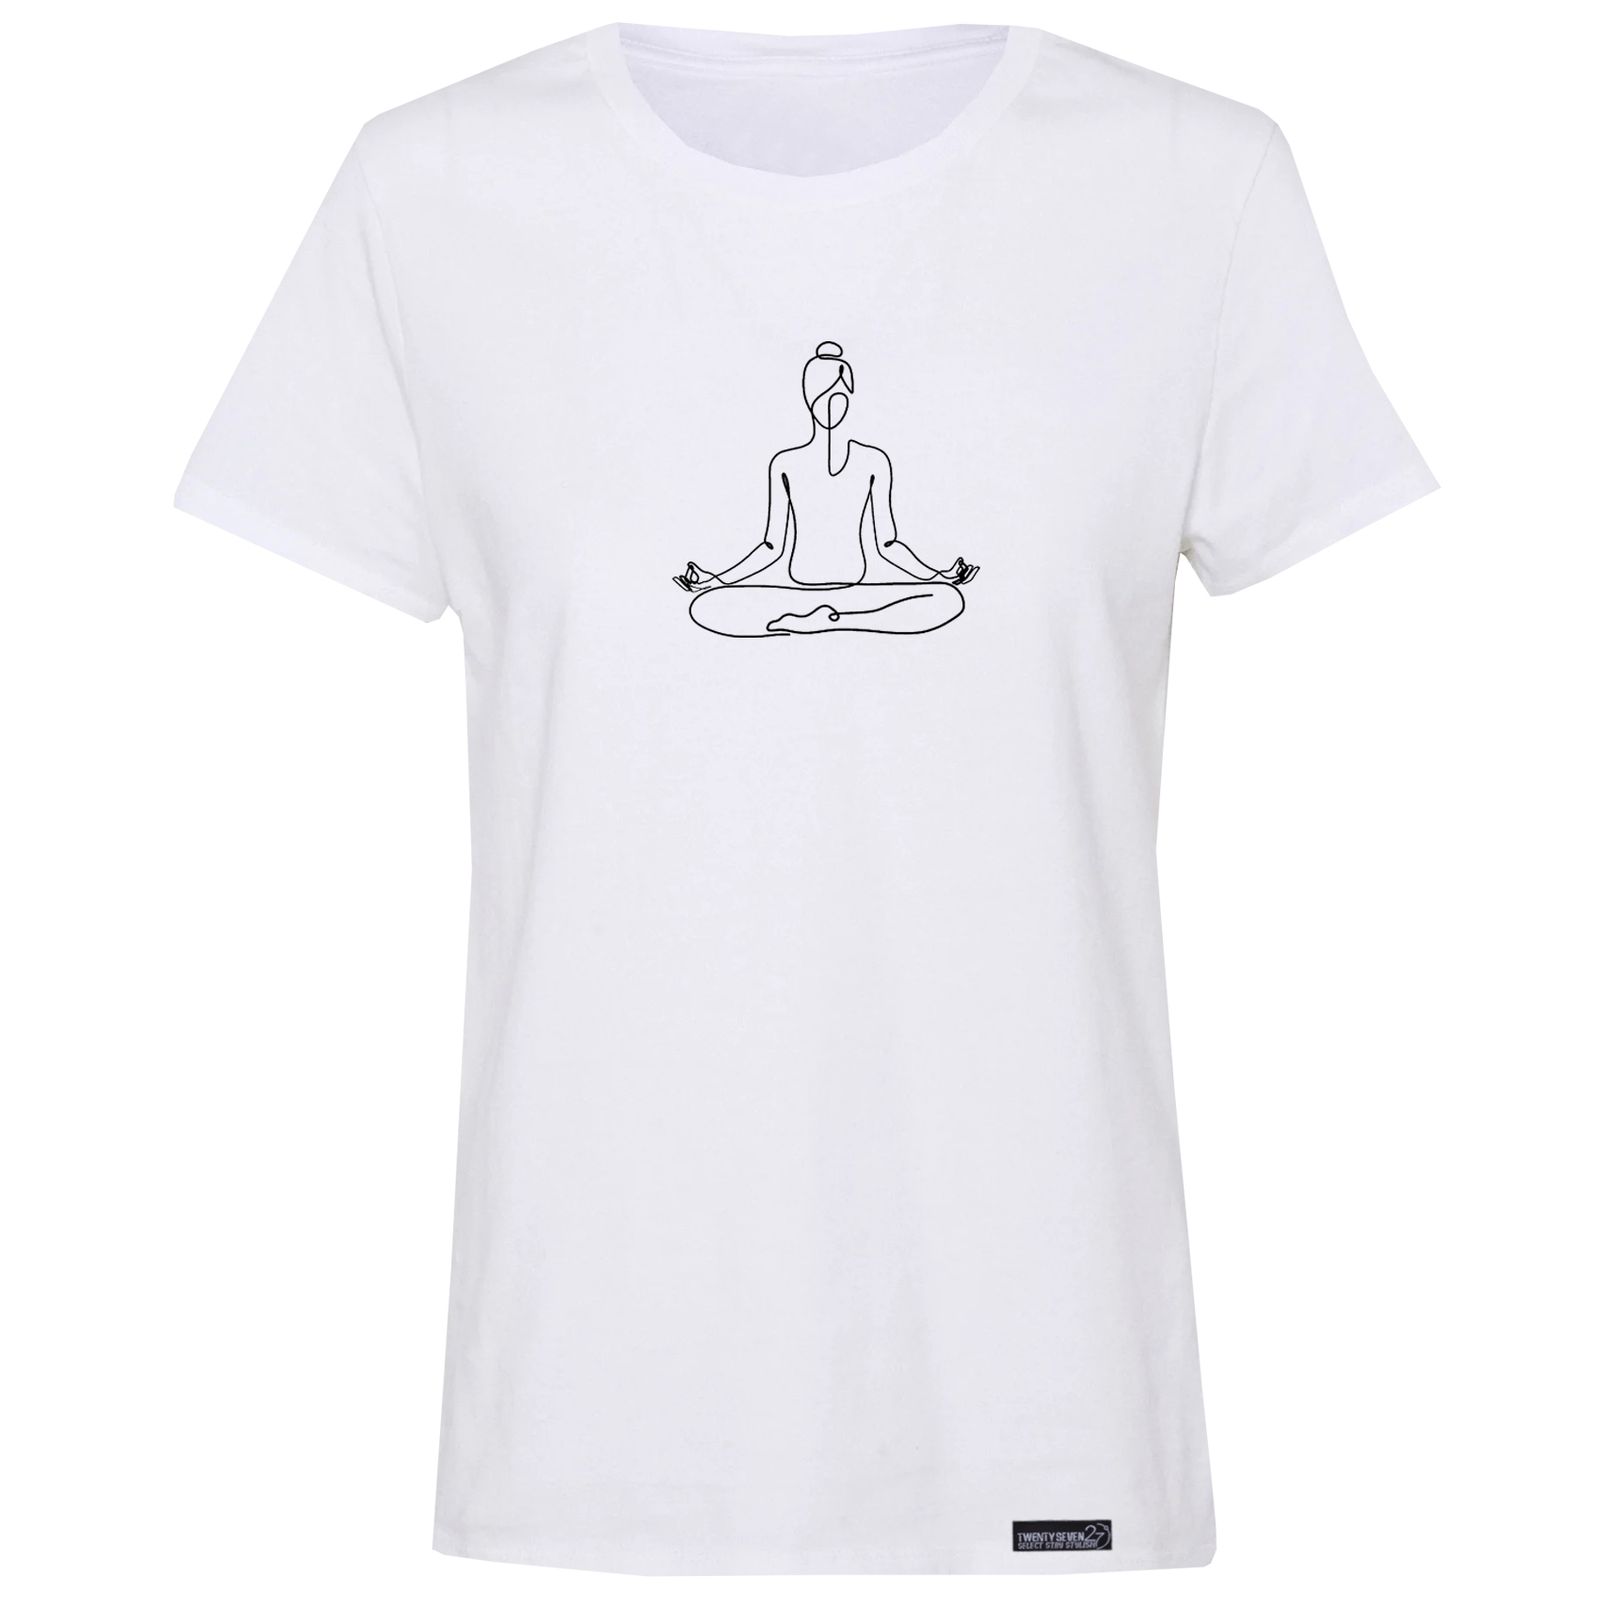 تی شرت آستین کوتاه زنانه 27 مدل یوگا کد RN552 -  - 2